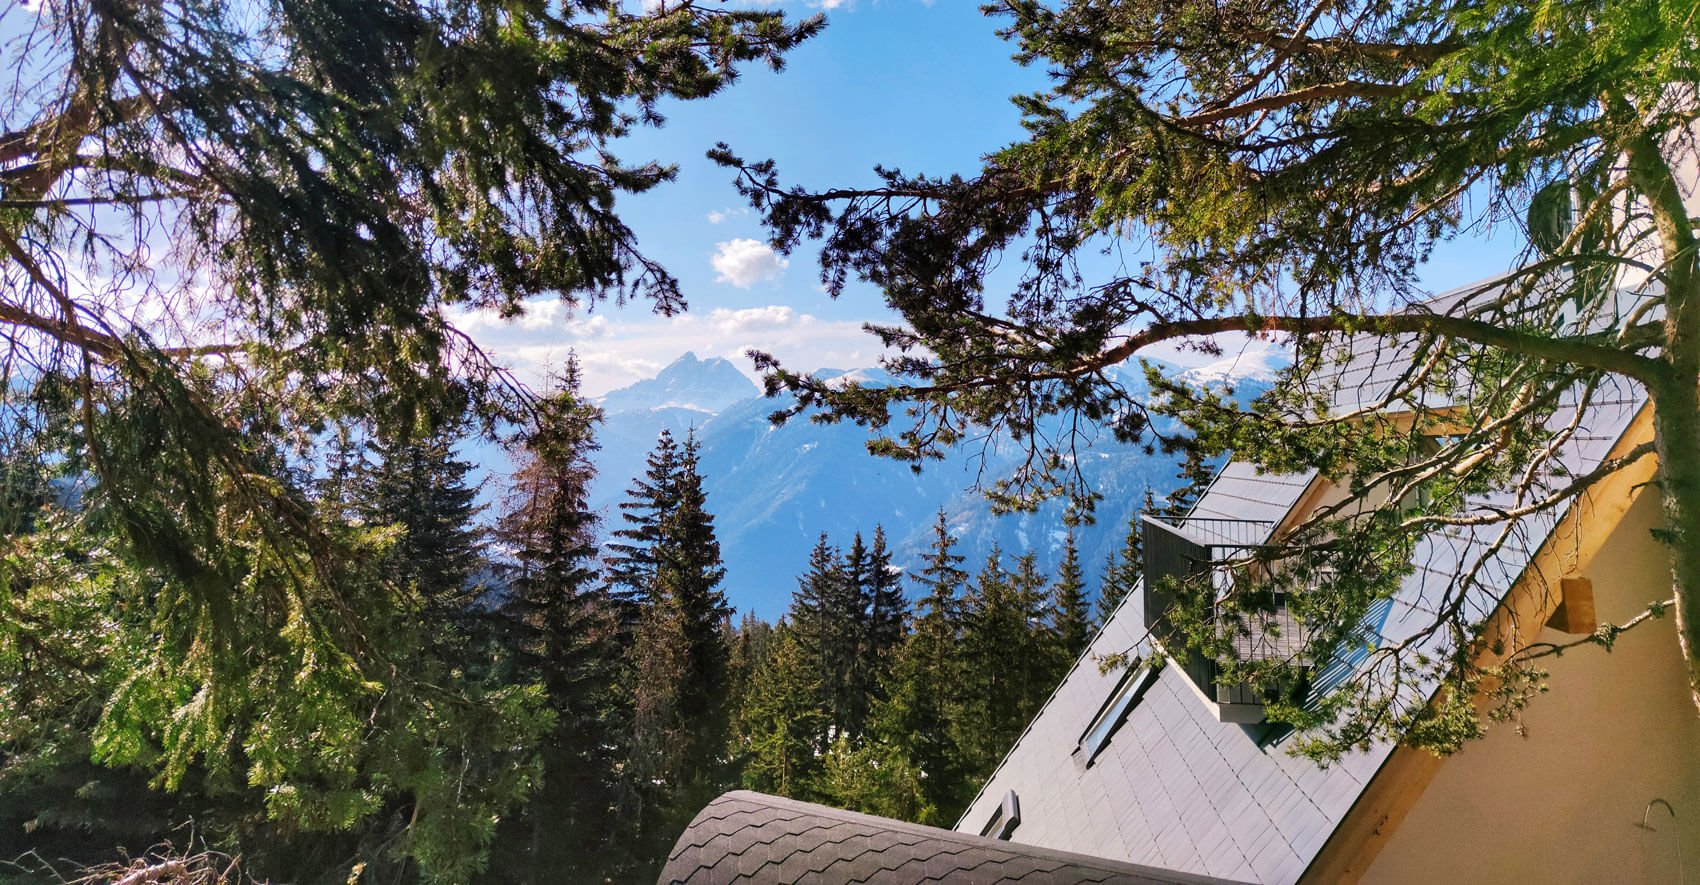 Vacanza senza stress in un rifugio alpino